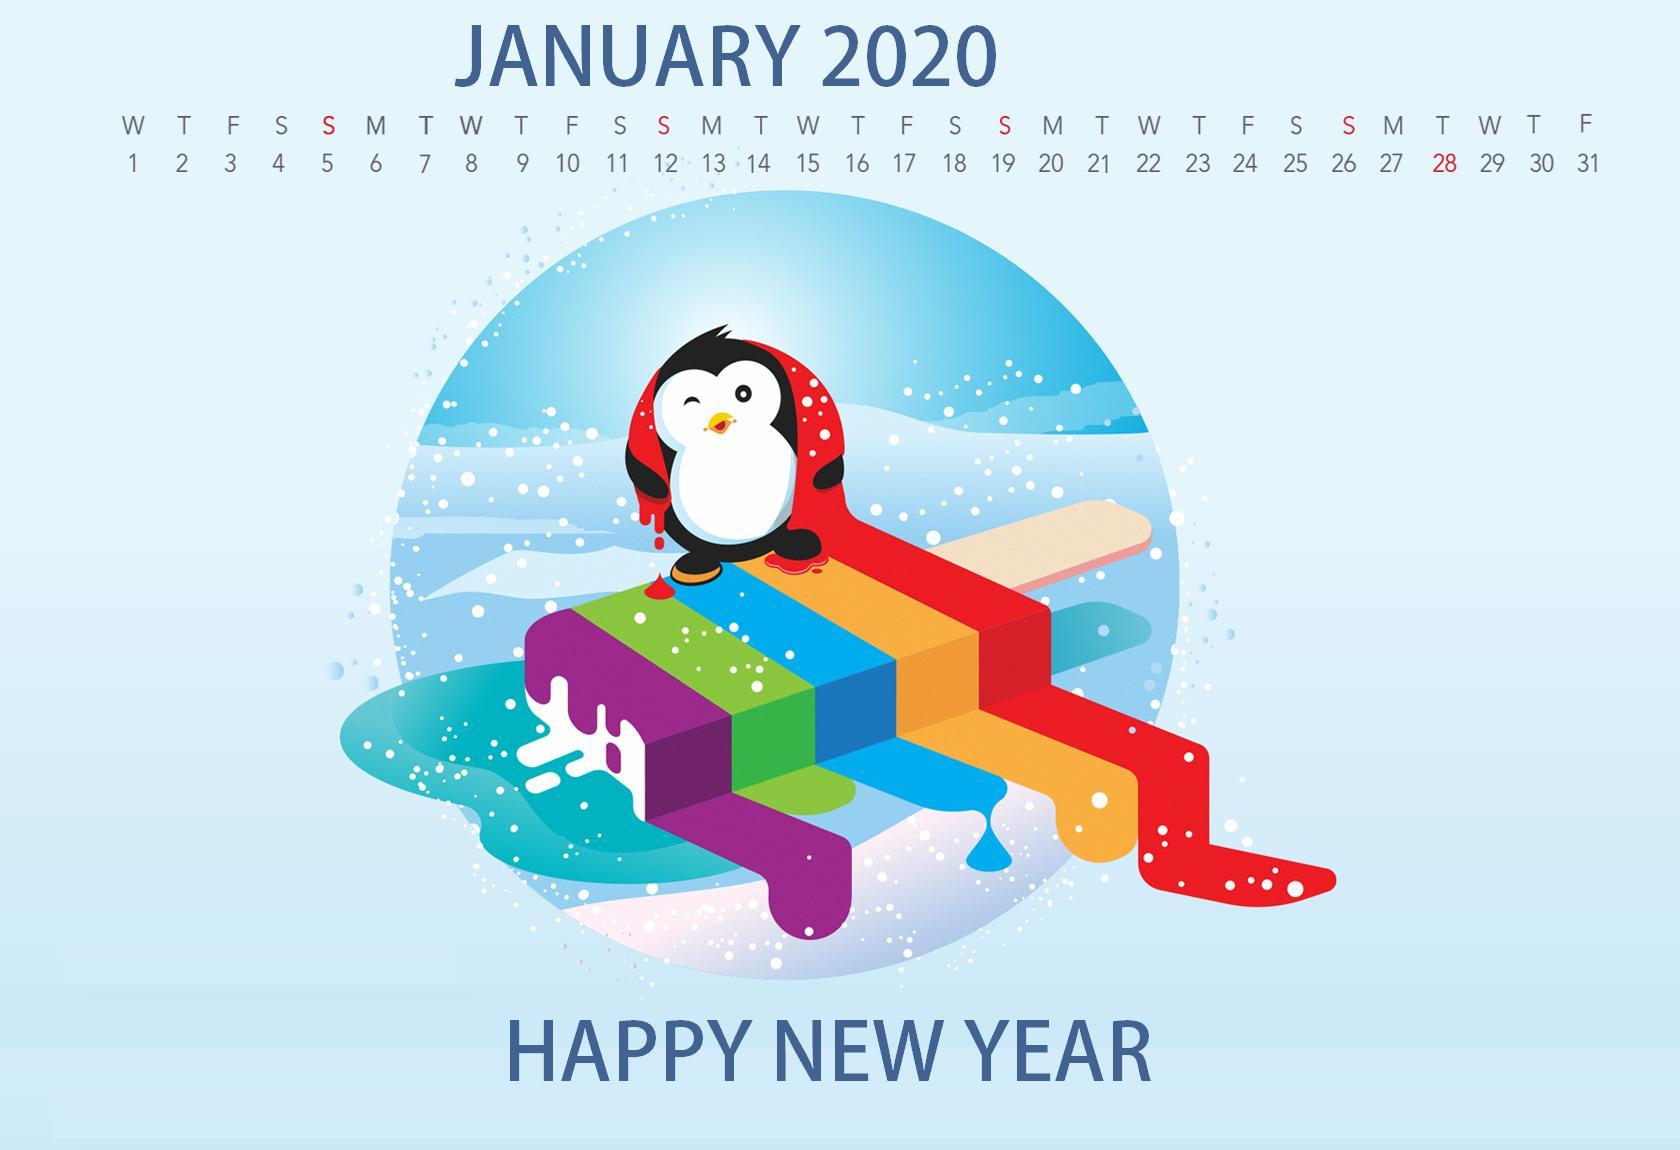 Cute 2020 Desktop Calendar Wallpaper